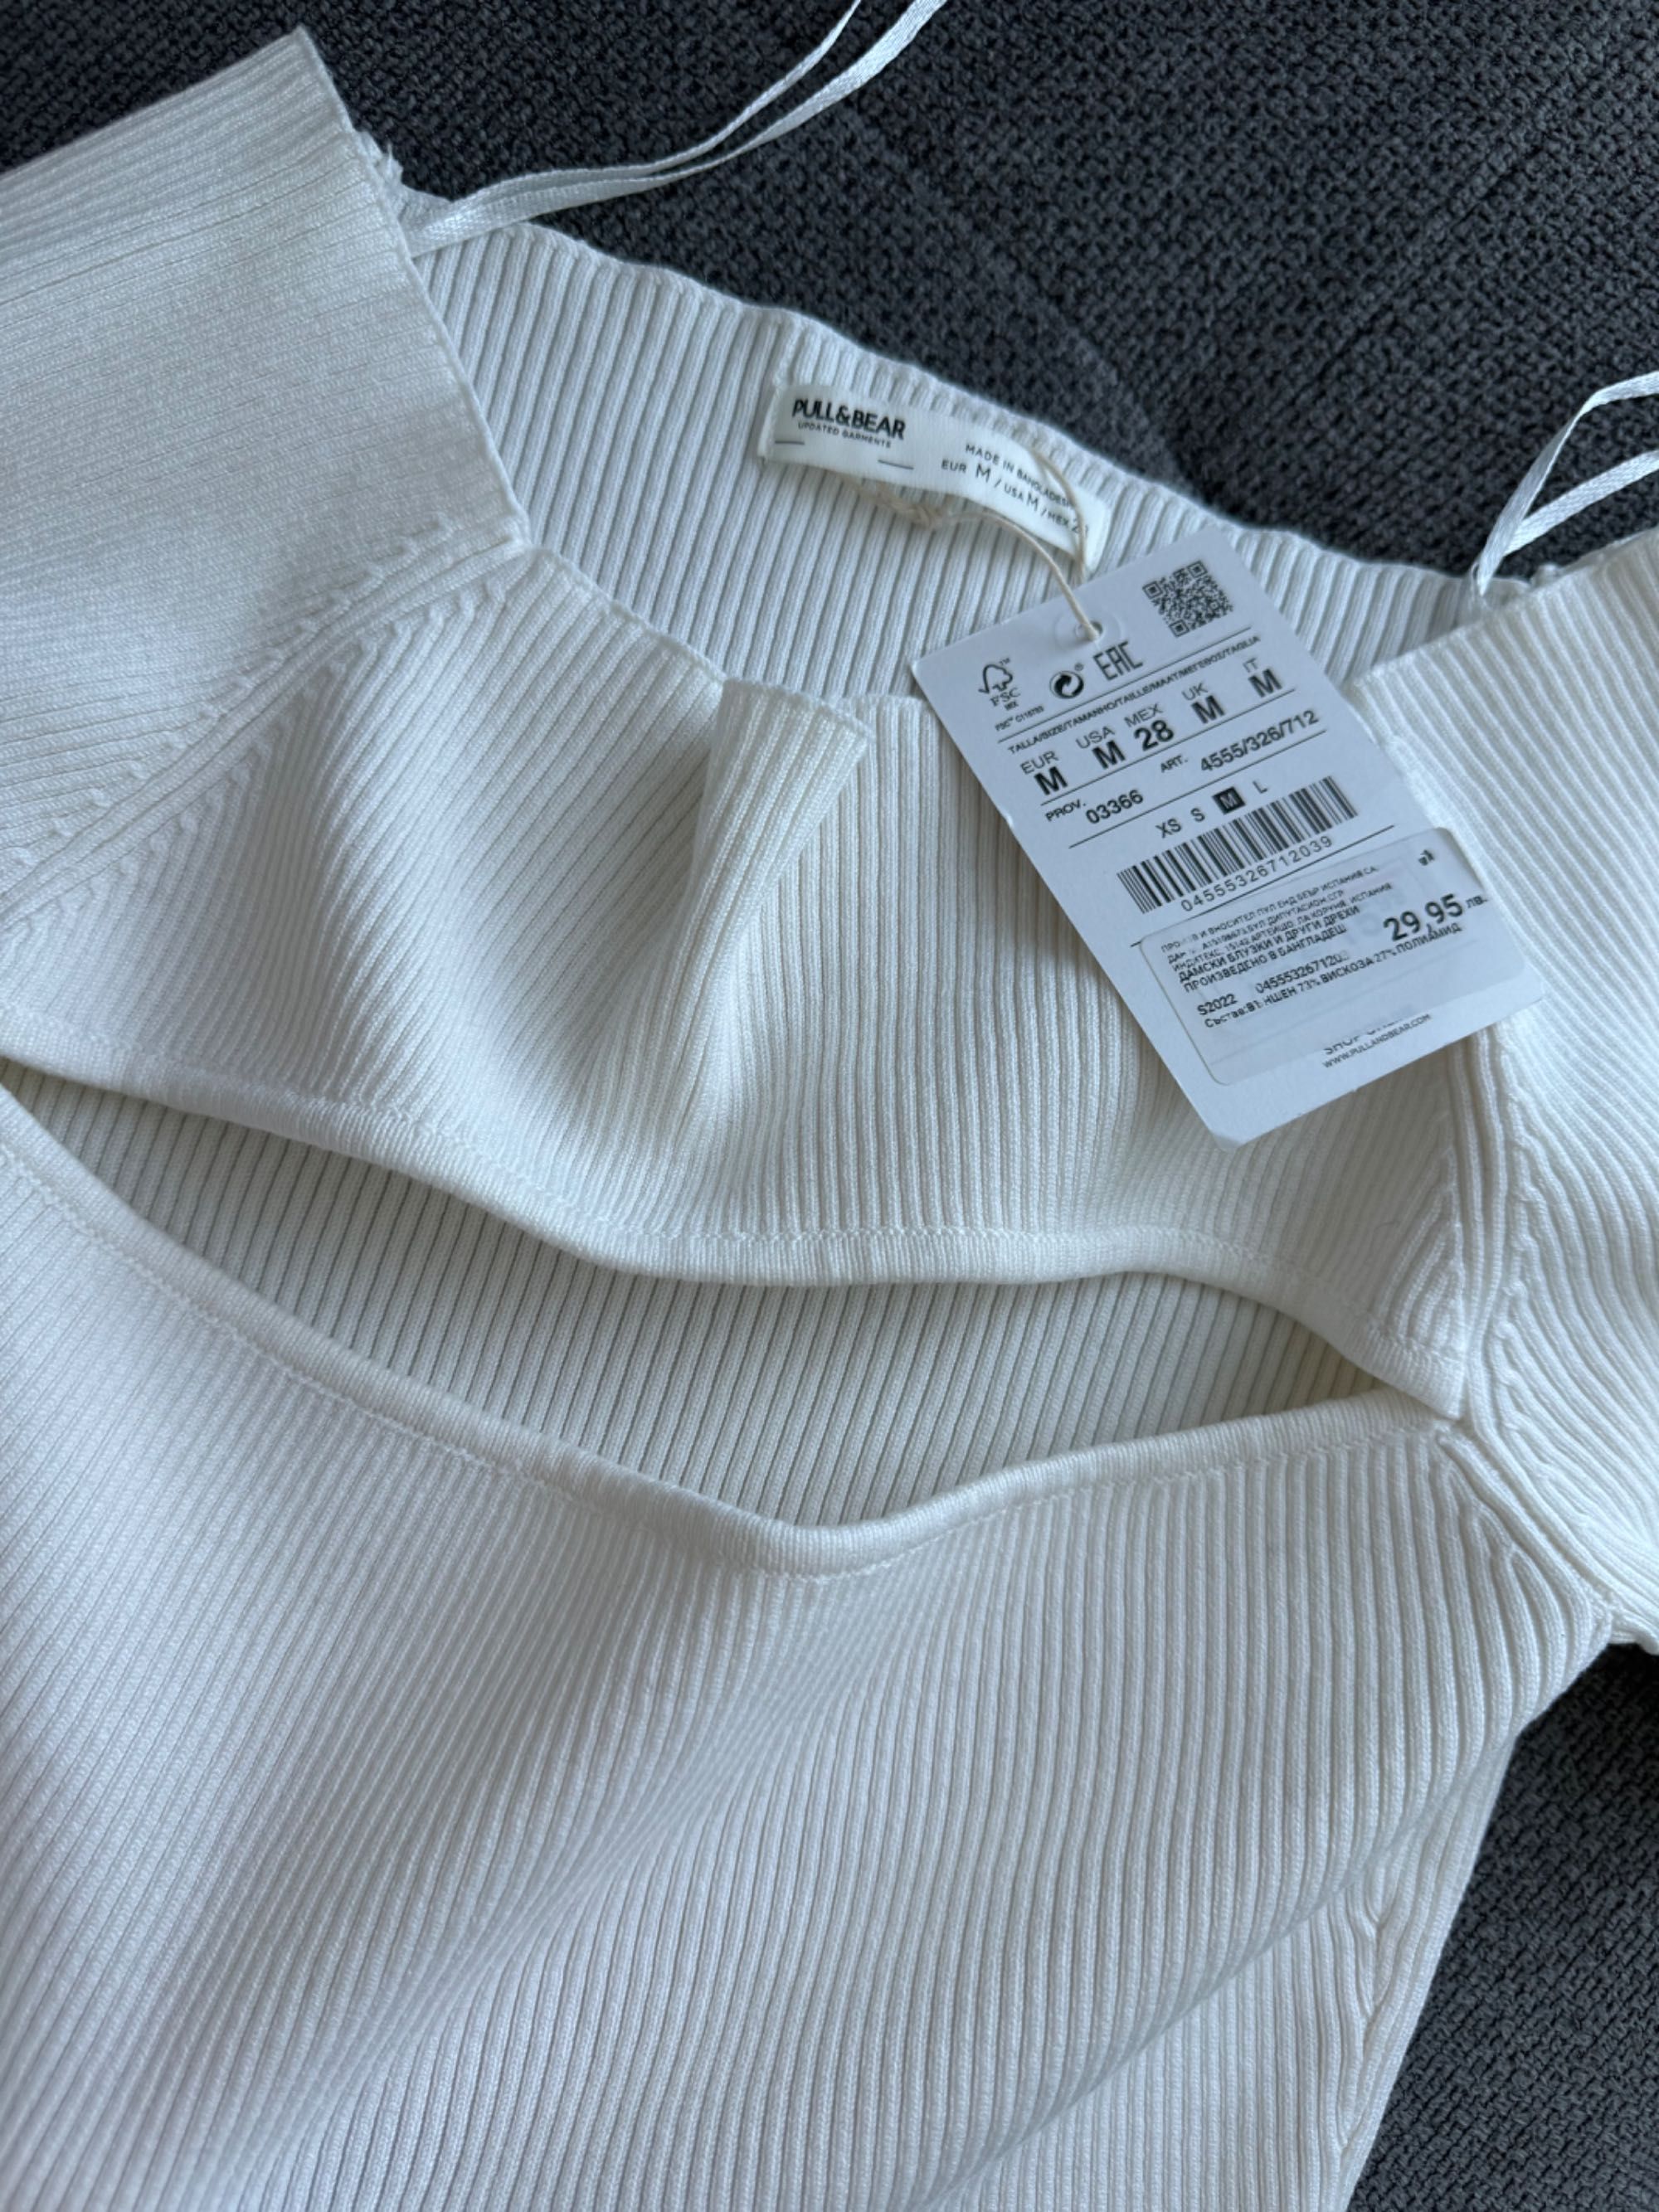 BERSHKA & Pull & Bear - нова блуза топ  размер S/M